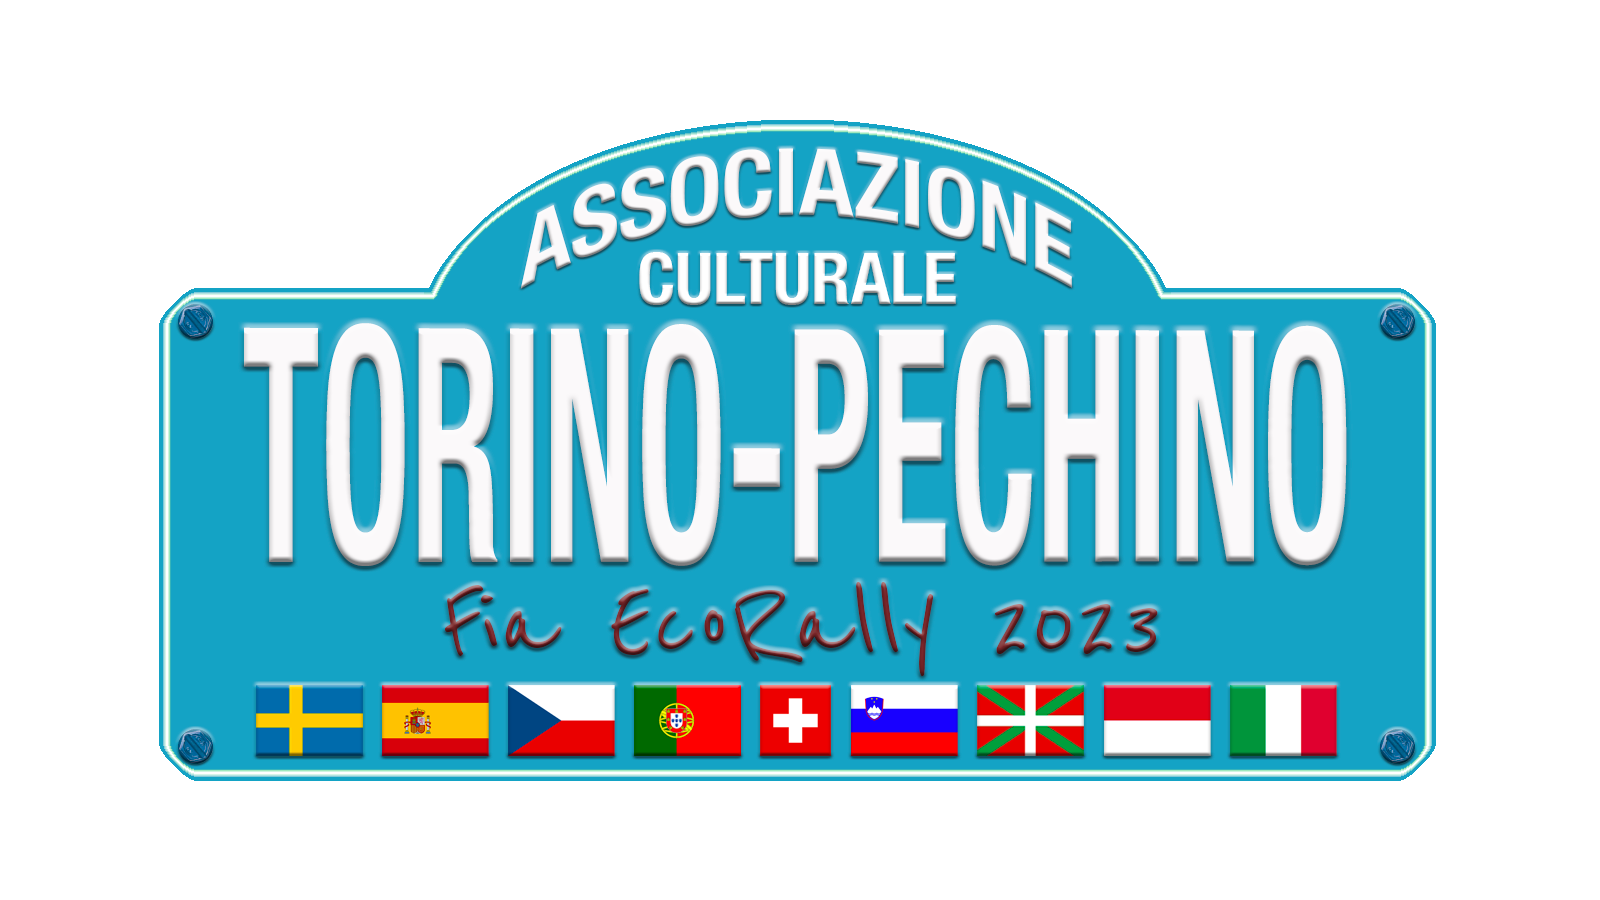 Associazione Culturale Torino-Pechino